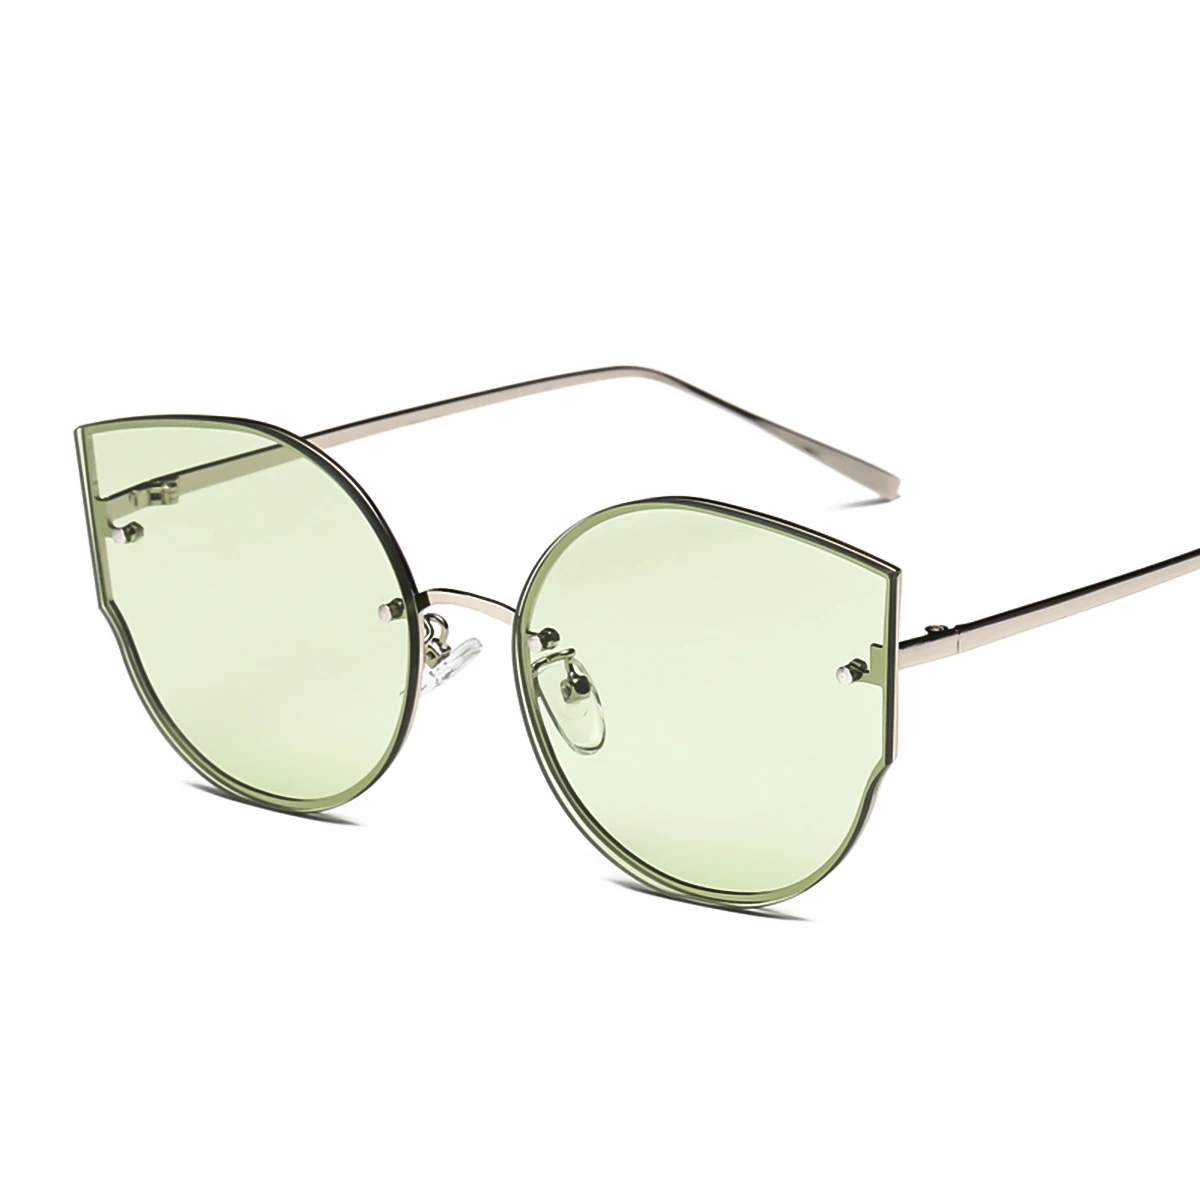 Для женщин мода кошачий глаз зеркало анти-УФ солнцезащитные защитные очки солнцезащитные очки UV400 защиты солнцезащитные очки Тактический Googles